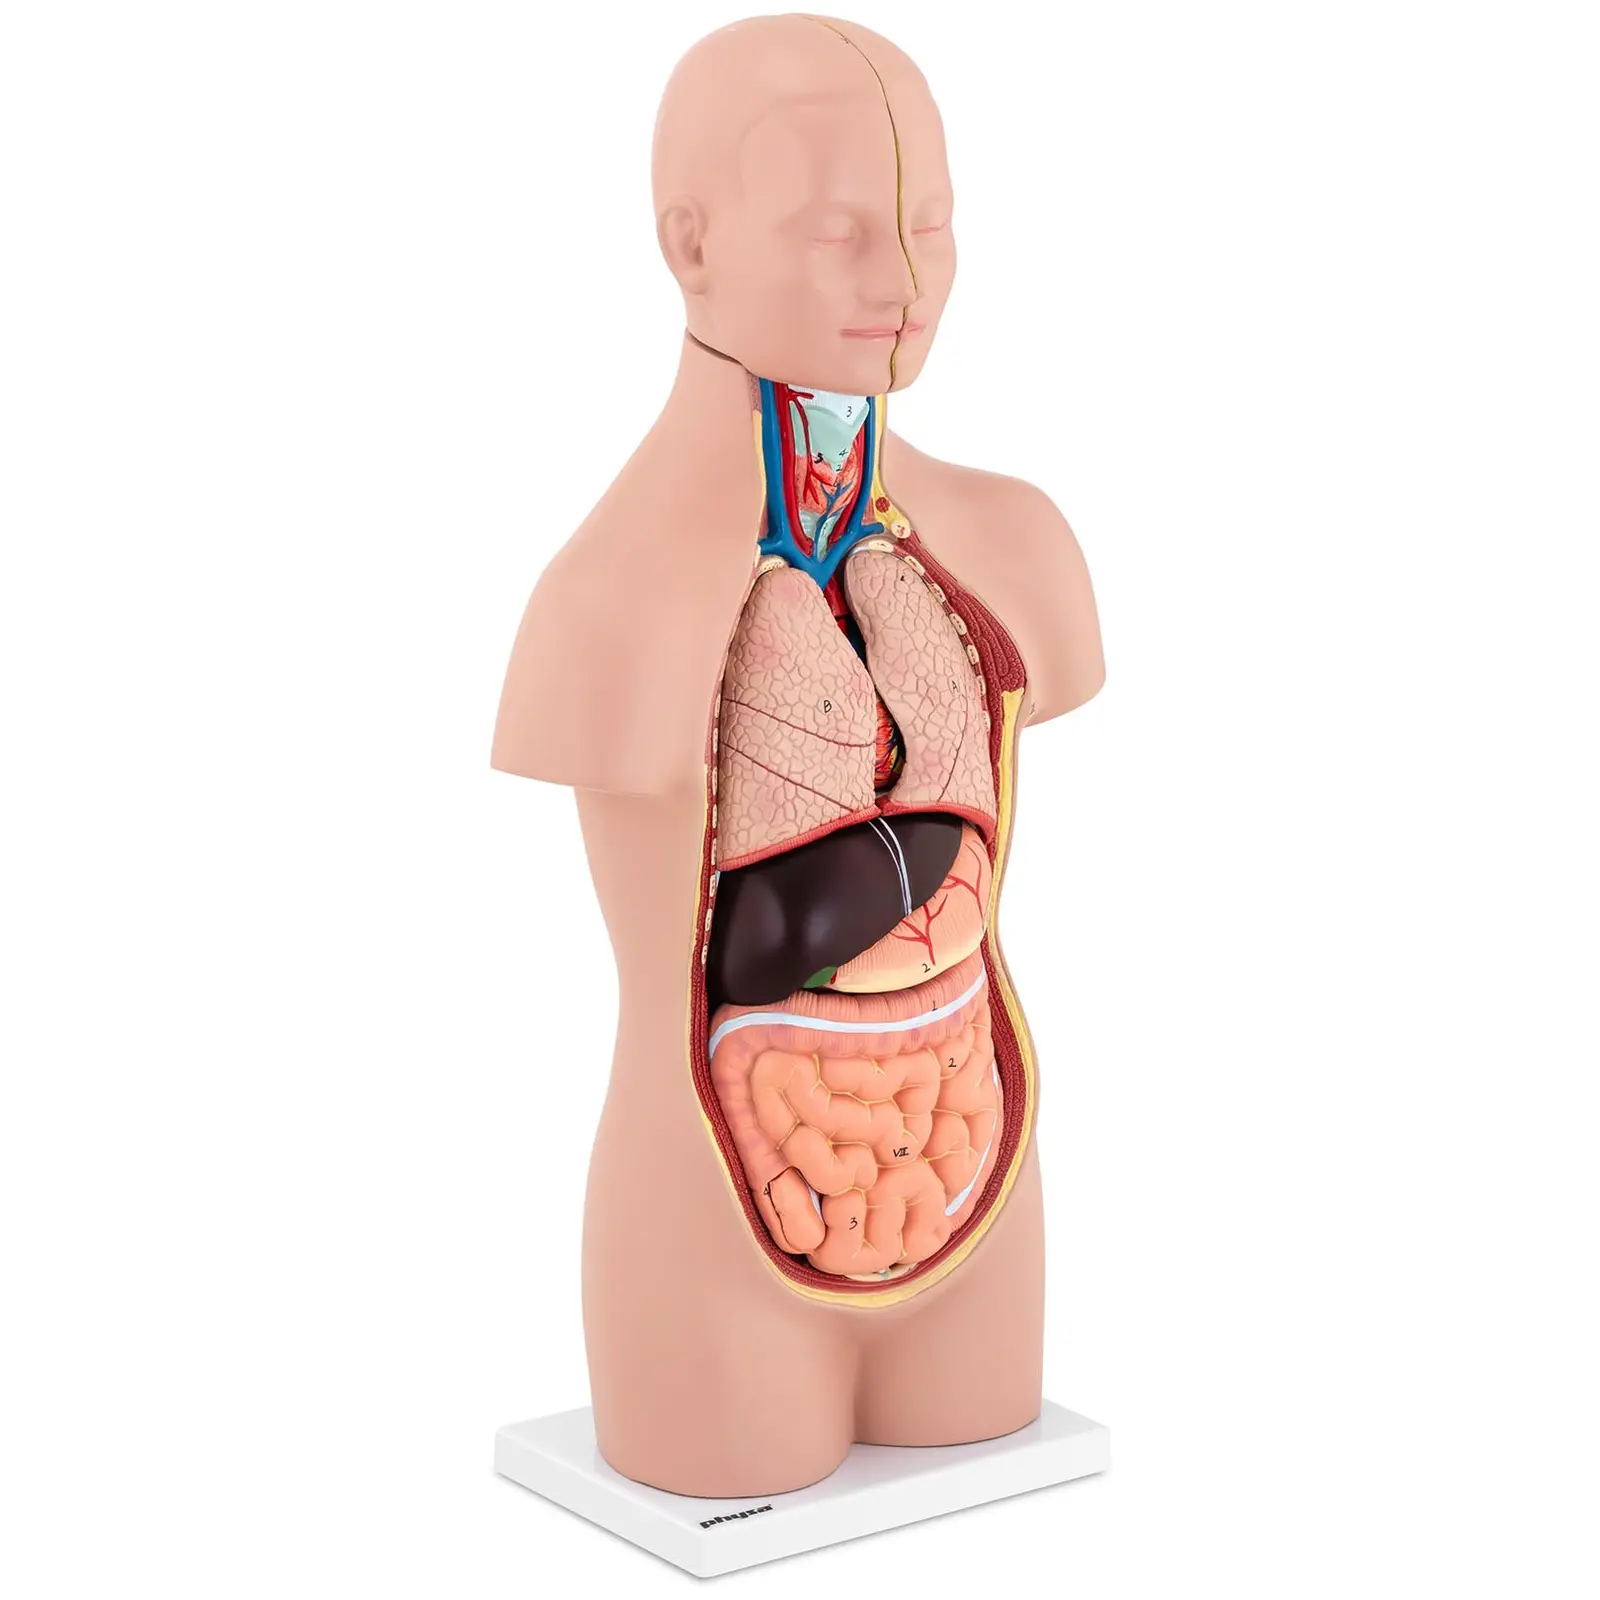 Maquette anatomique du torse humain asexué - En 12 parties - Hauteur 48 cm